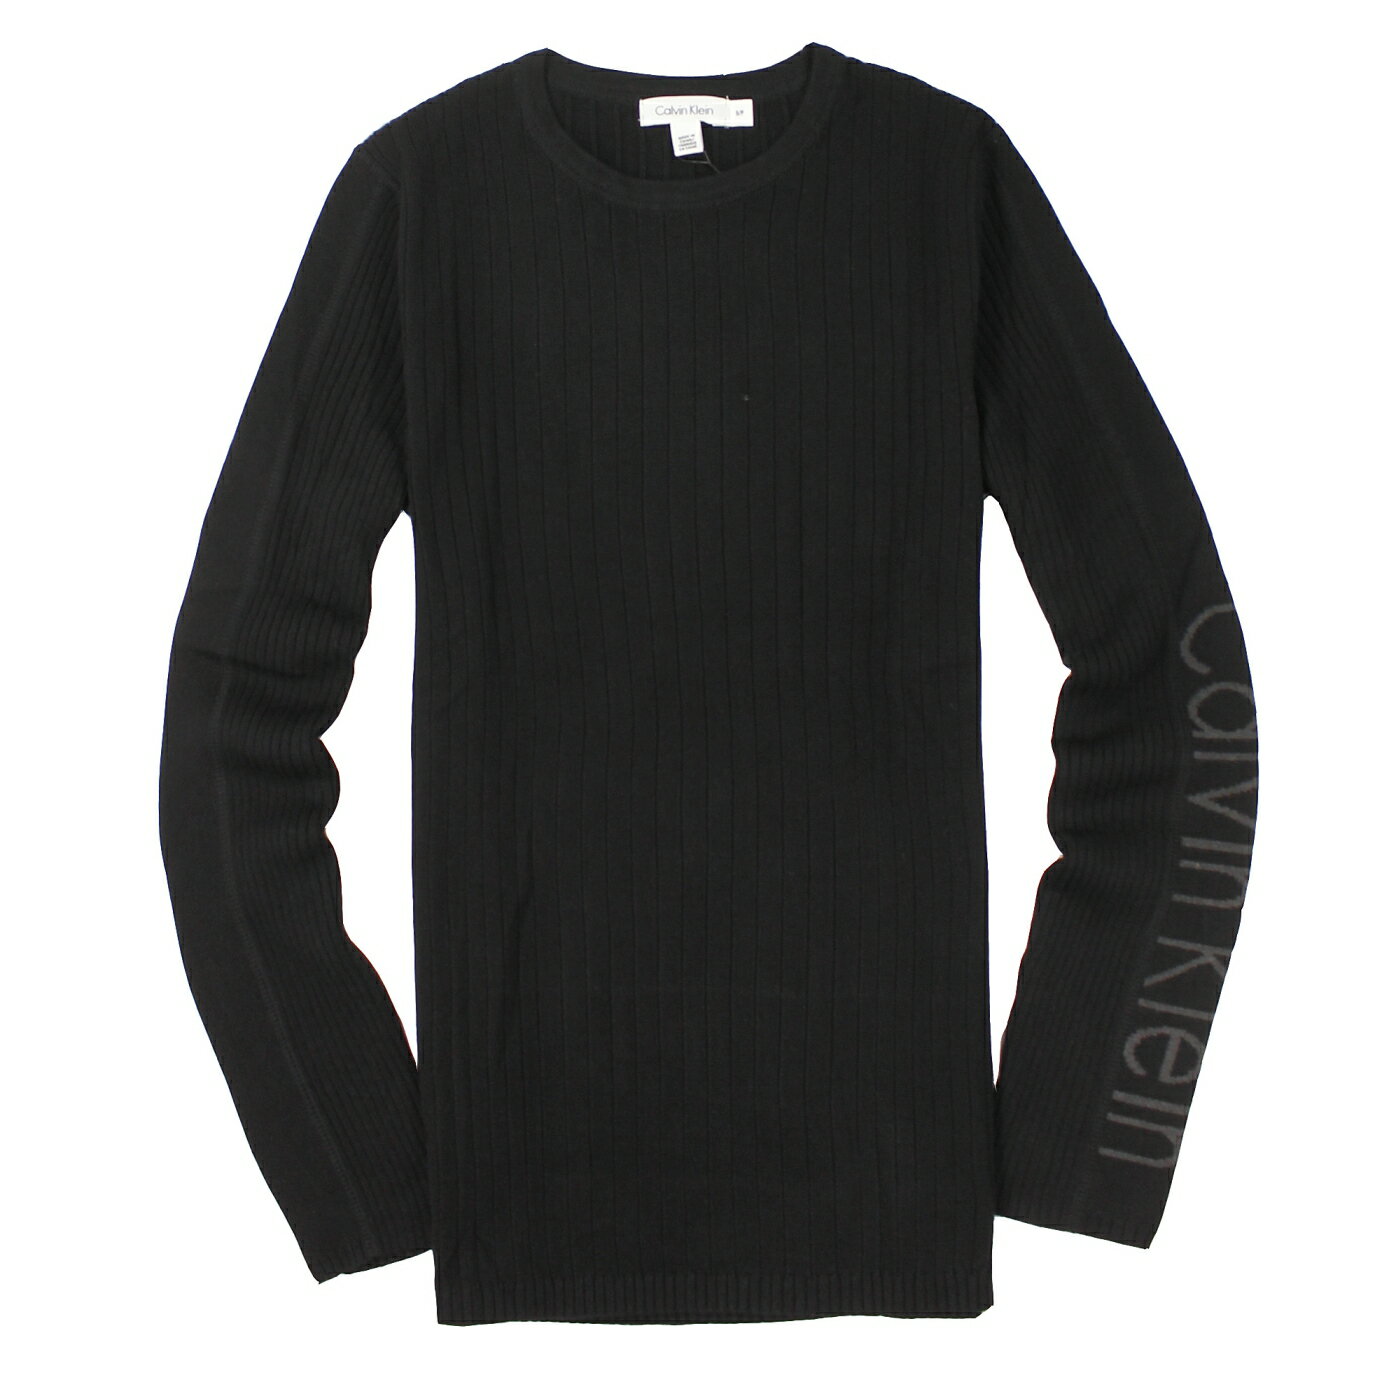 美國百分百【全新真品】Calvin Klein 針織衫 CK 線衫 上衣 黑 薄 圓領 Logo 棉質 男 S M號 A677